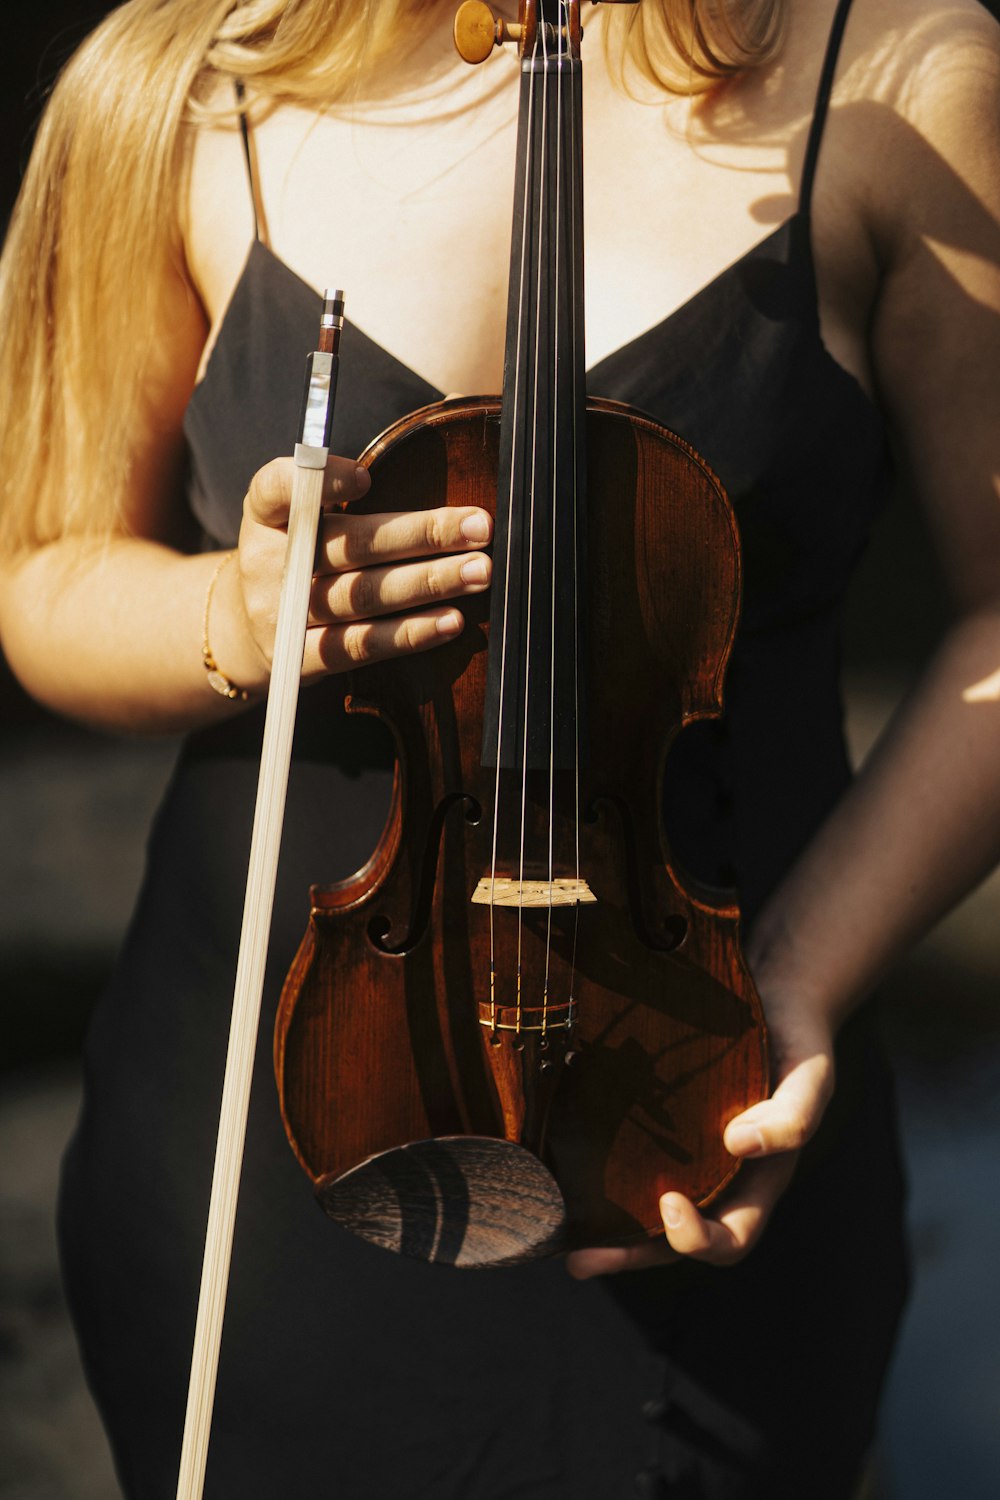 Una mujer con un vestido negro sosteniendo un violín